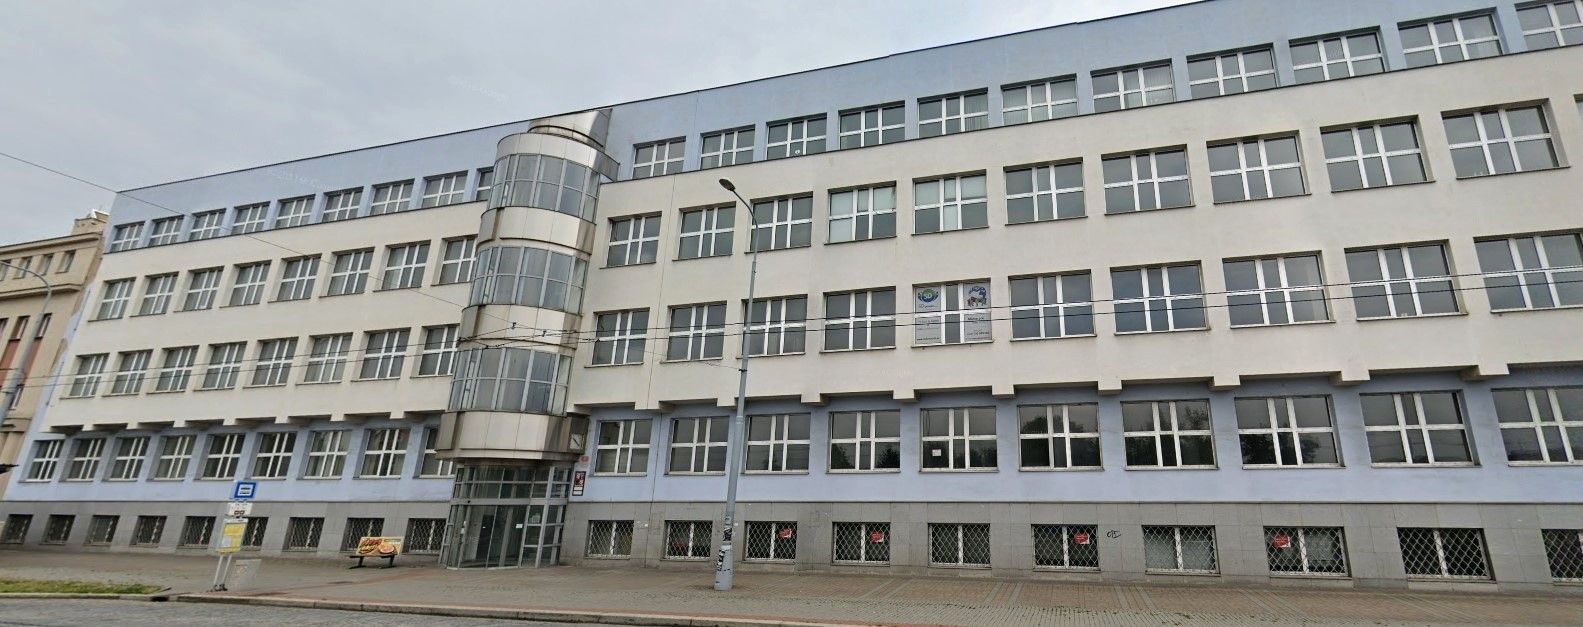 ZČU bude znovu prodávat budovu bývalého ředitelství Škodovky